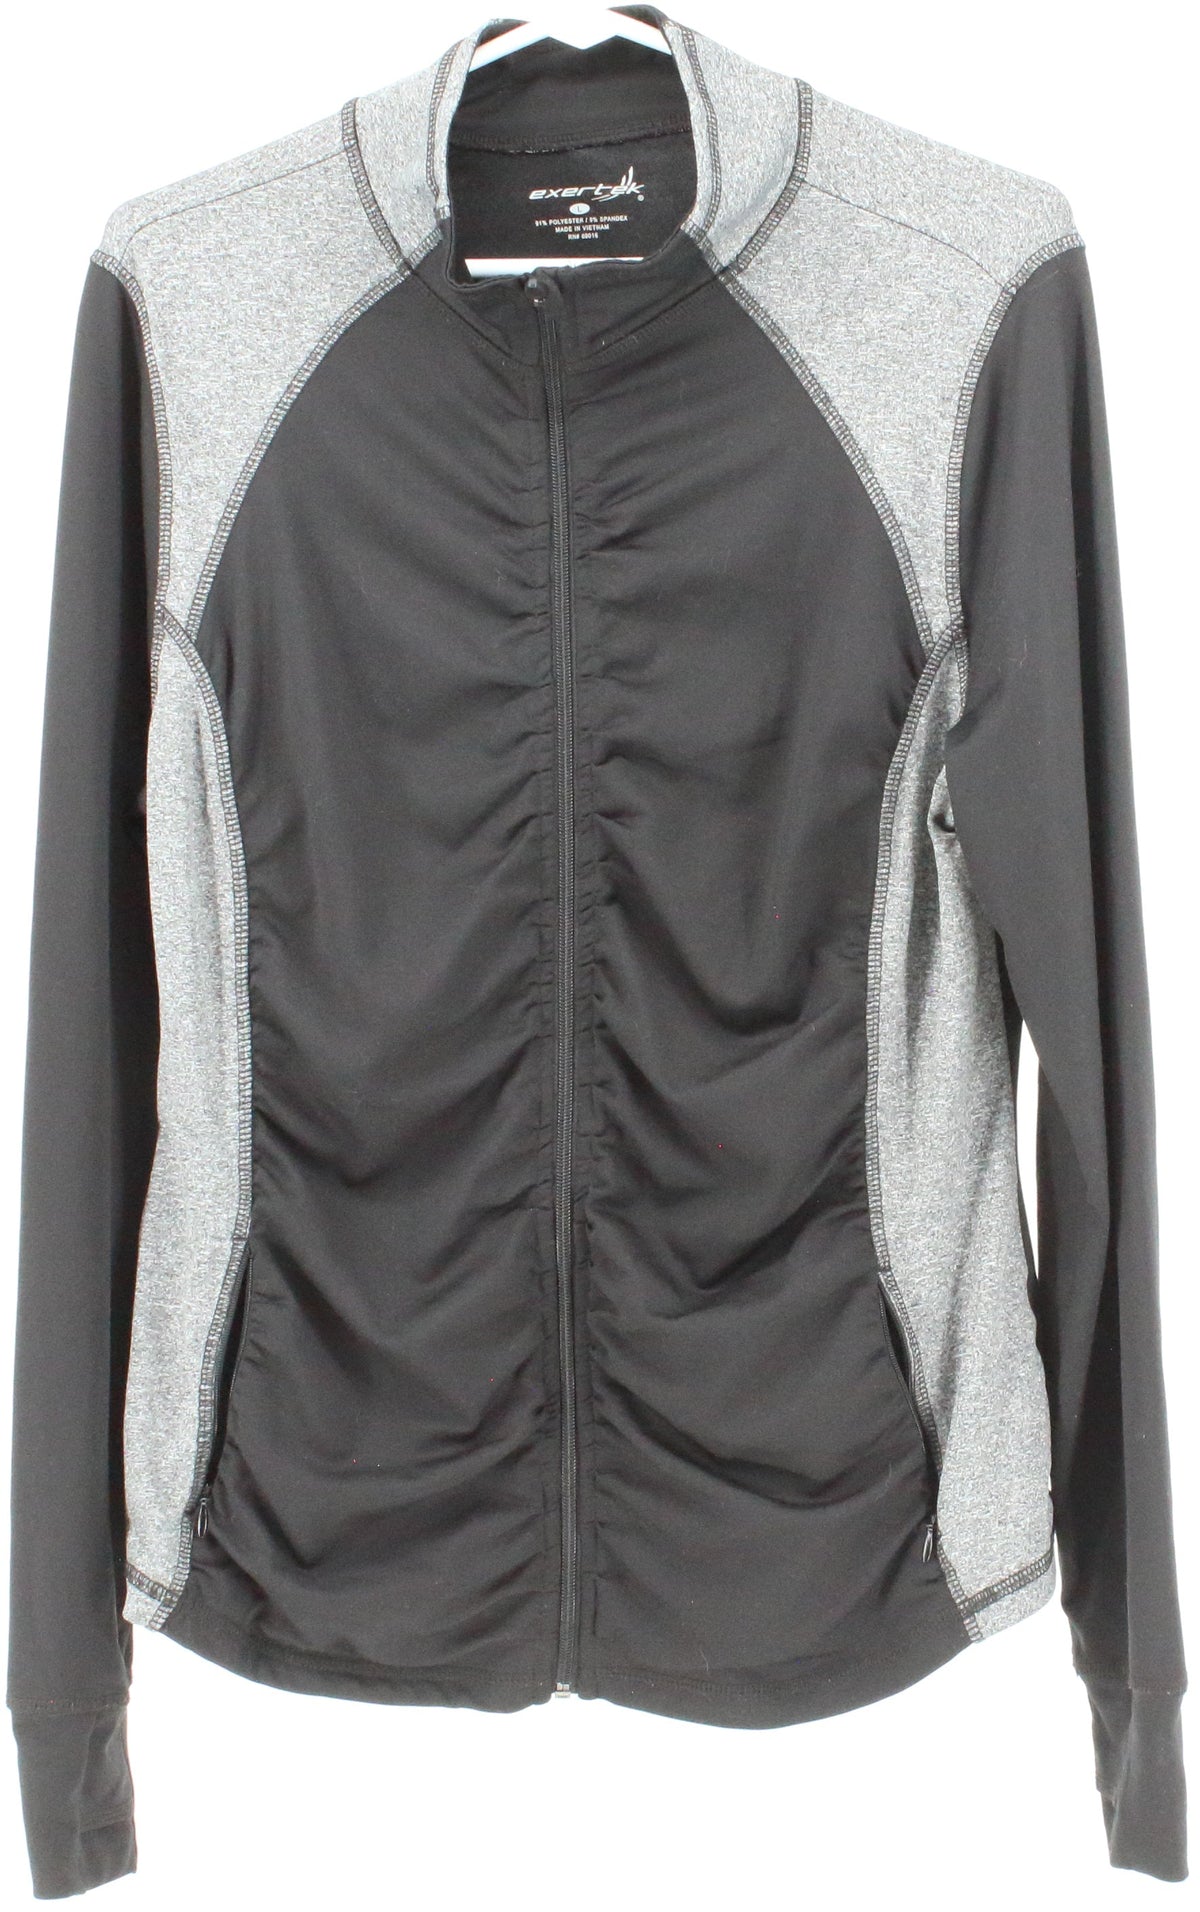 Exertek Black and Grey Full Zip Women's Jacket